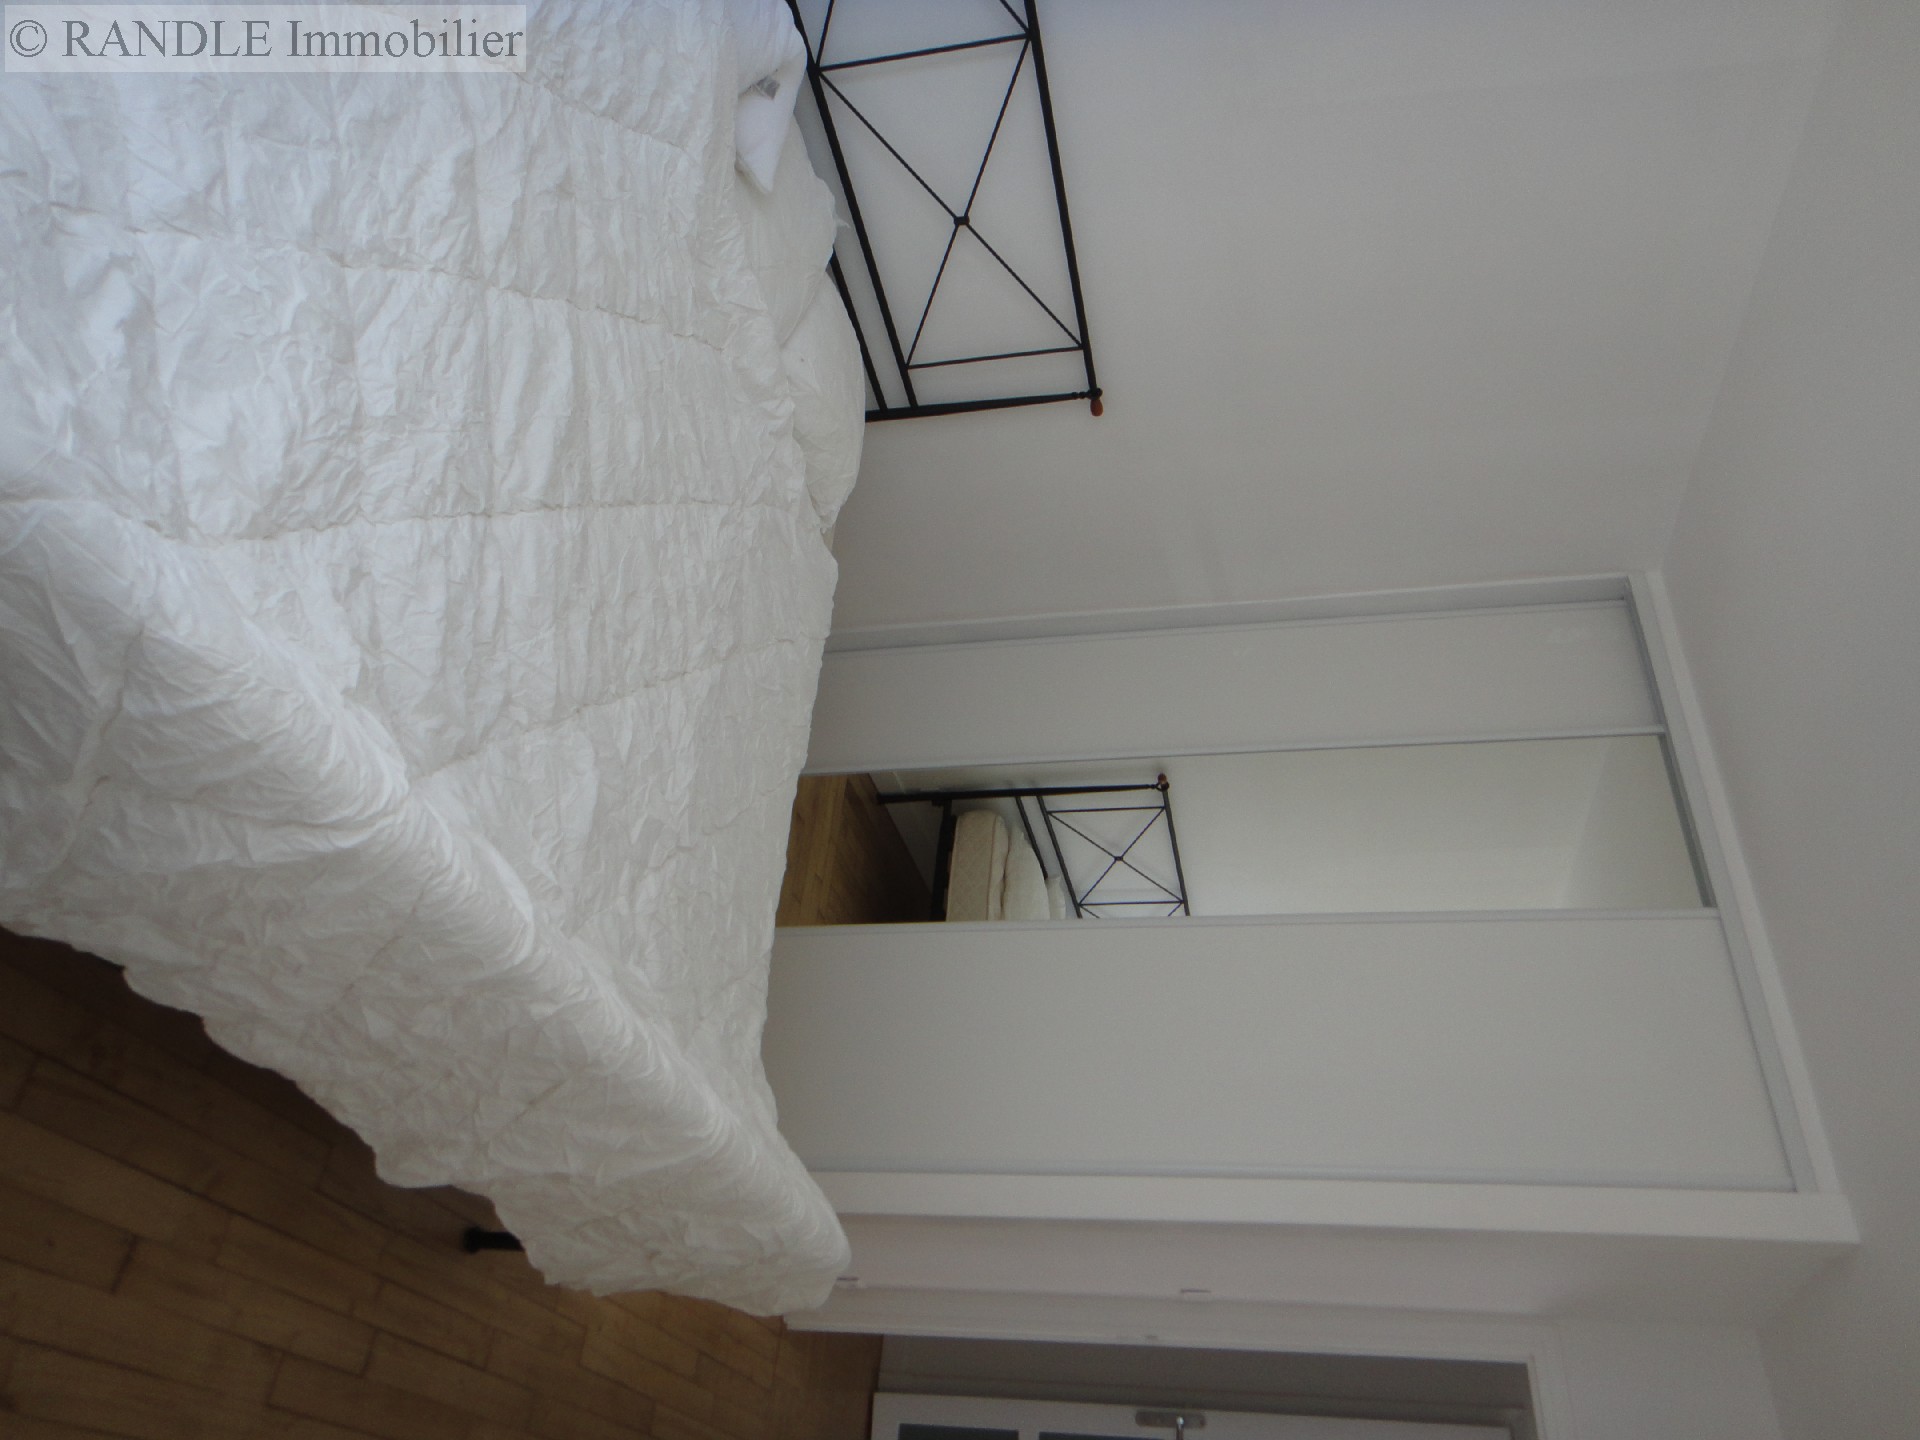 Vente appartement - LORIENT 81 m², 3 pièces